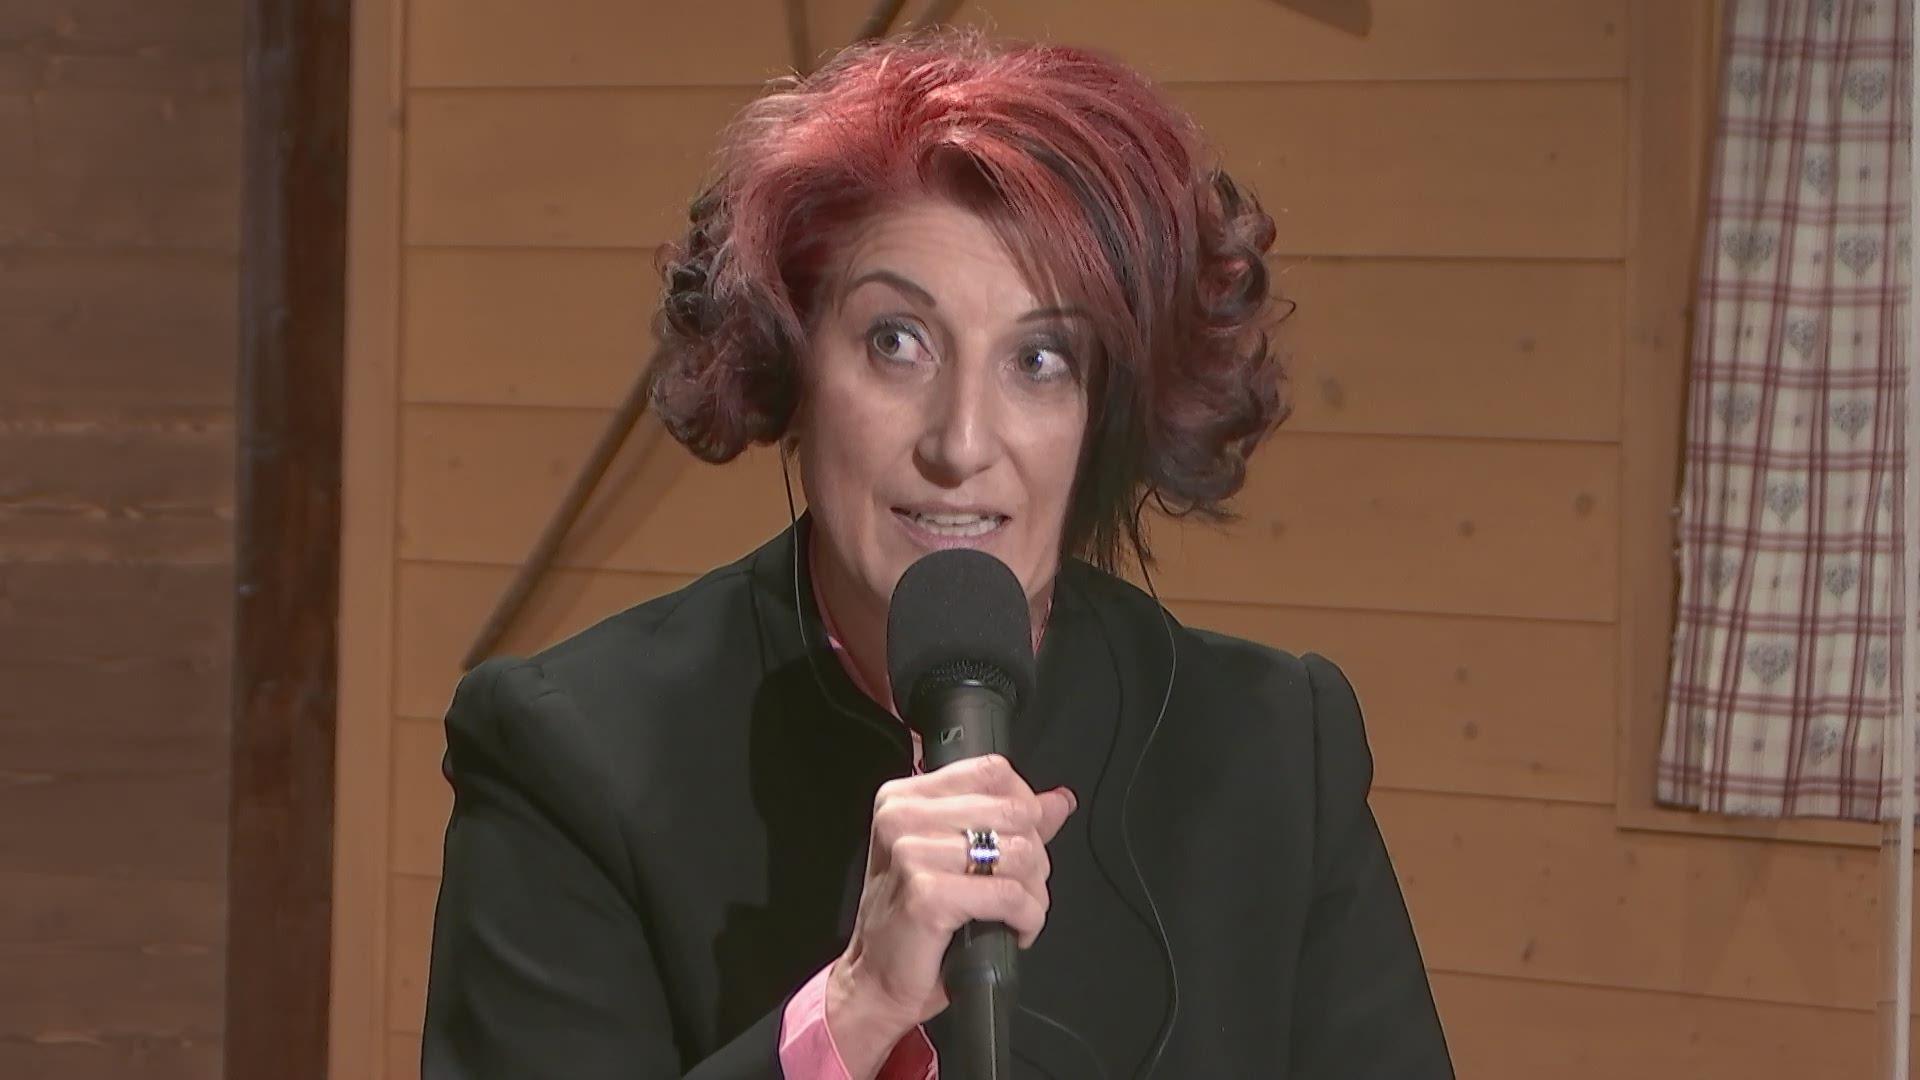 Luana Menoud Baldi, candidate du Centre pour l'élection au Conseil d'Etat fribourgeois. [RTS]